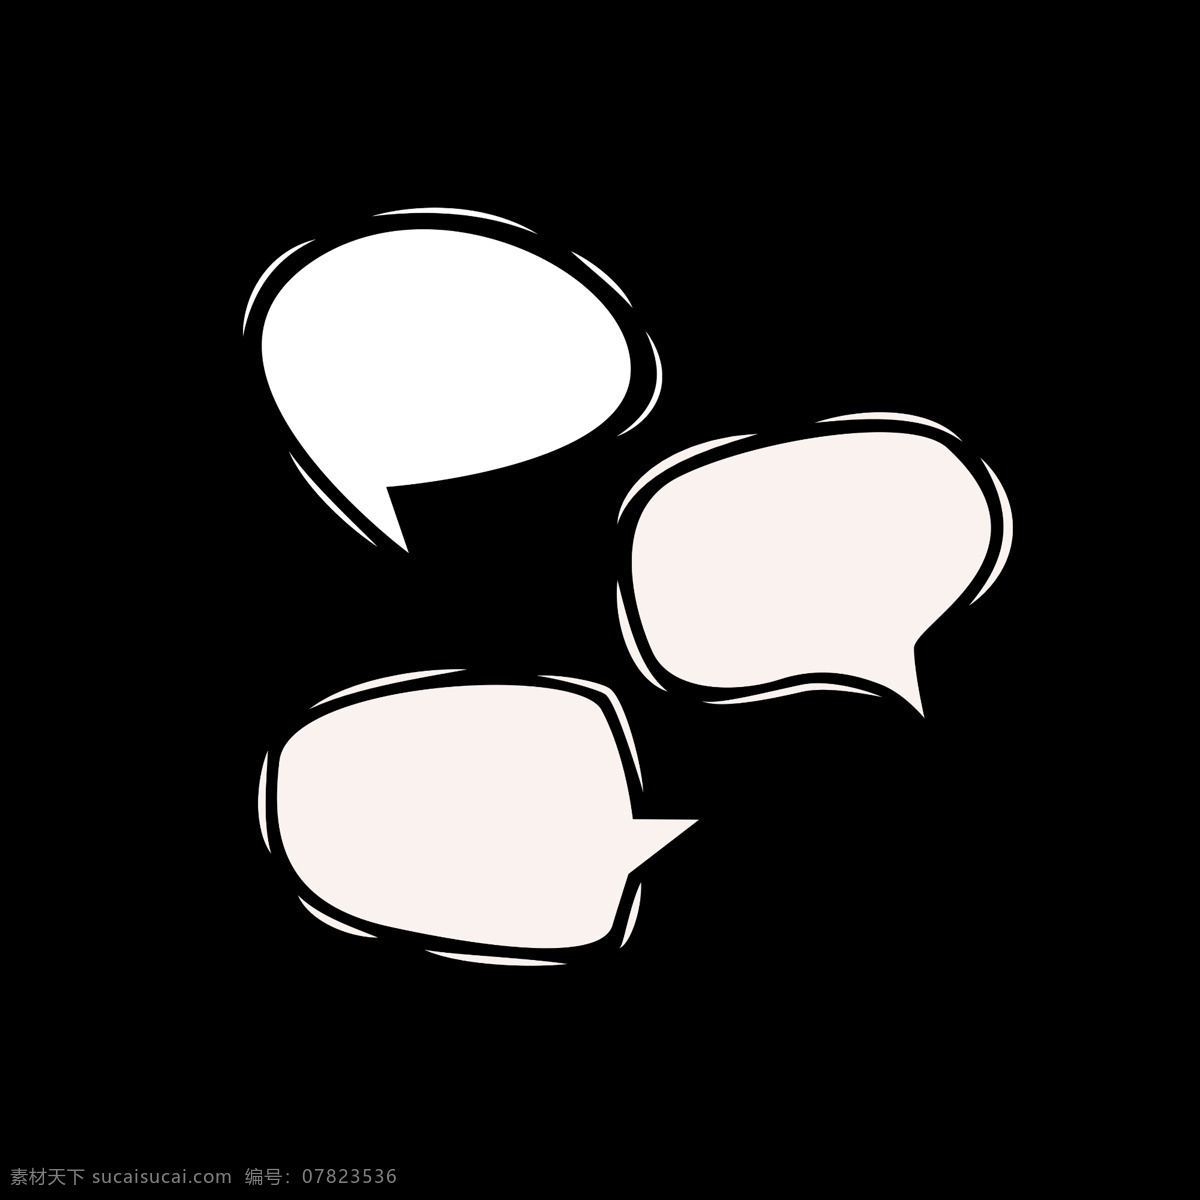 矢量对话框 线条对话框 卡通对话框 漫画对话框 对话框设计 几何对话框 图标标签标志